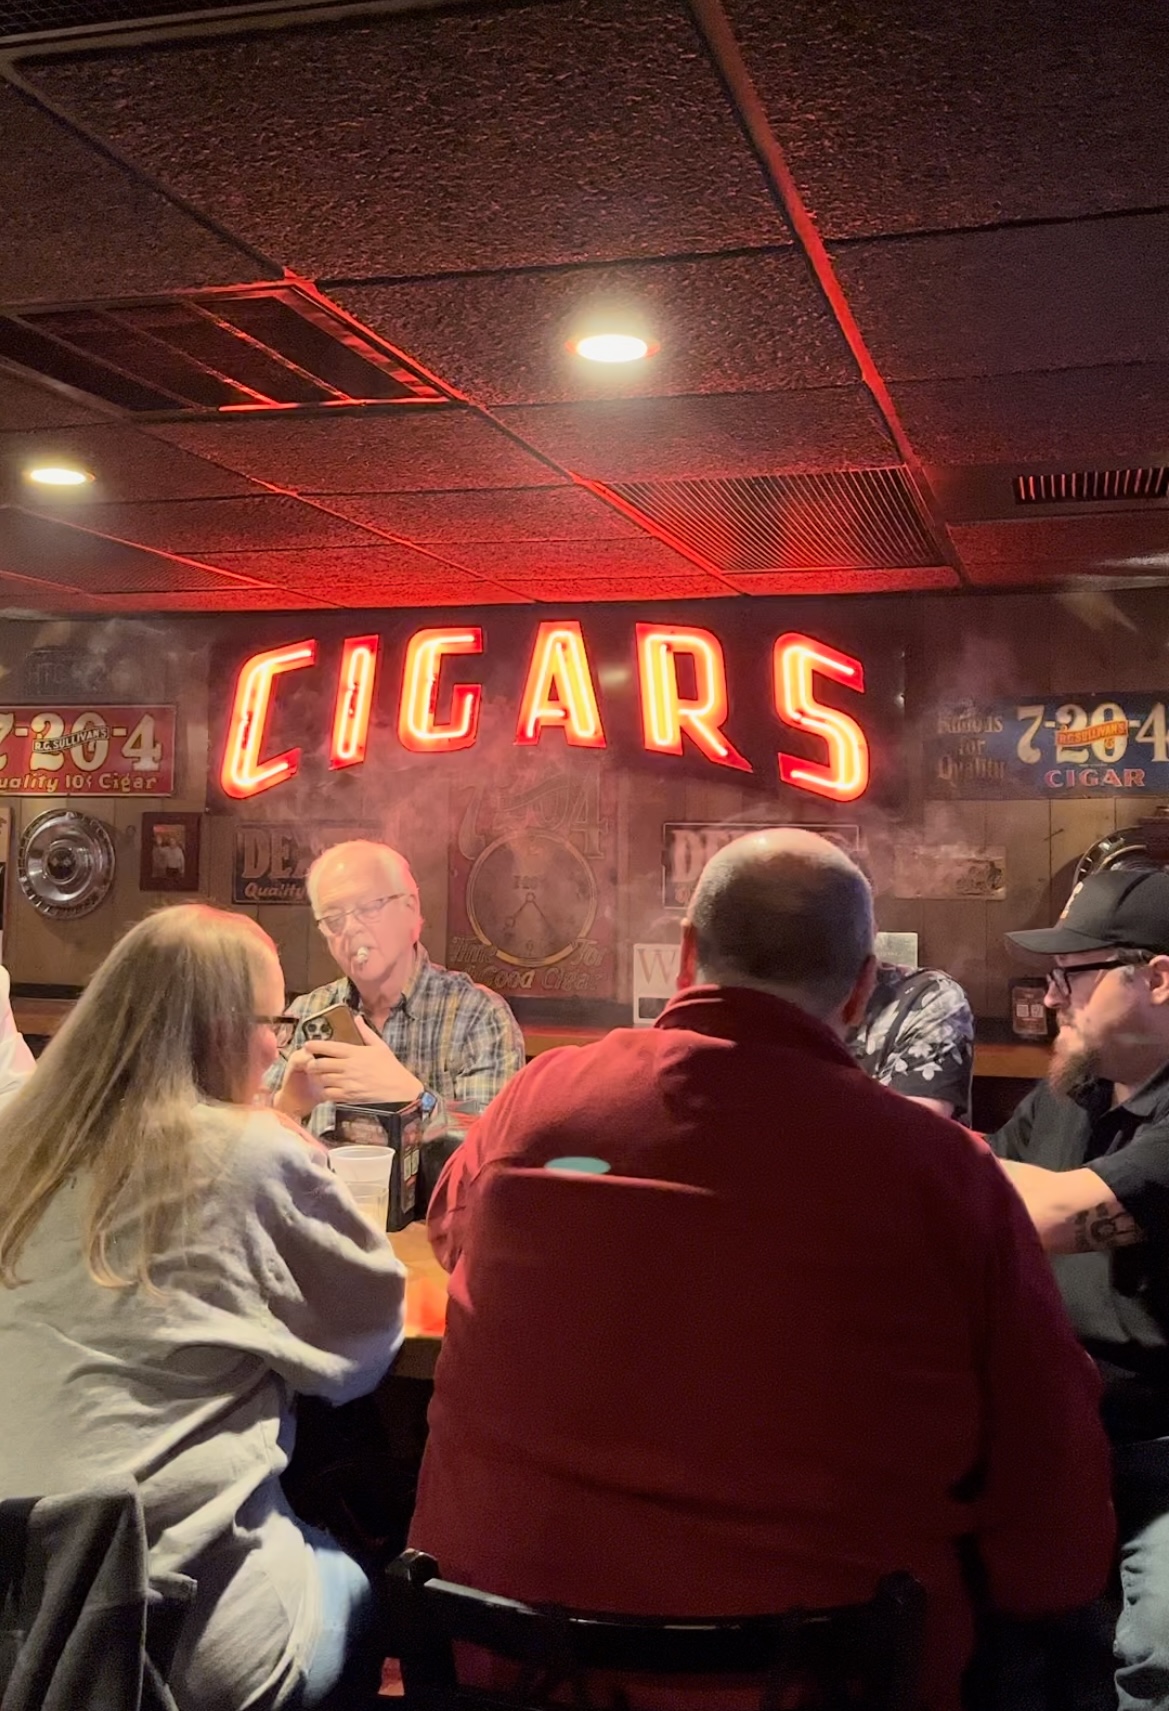 Cigar lounge